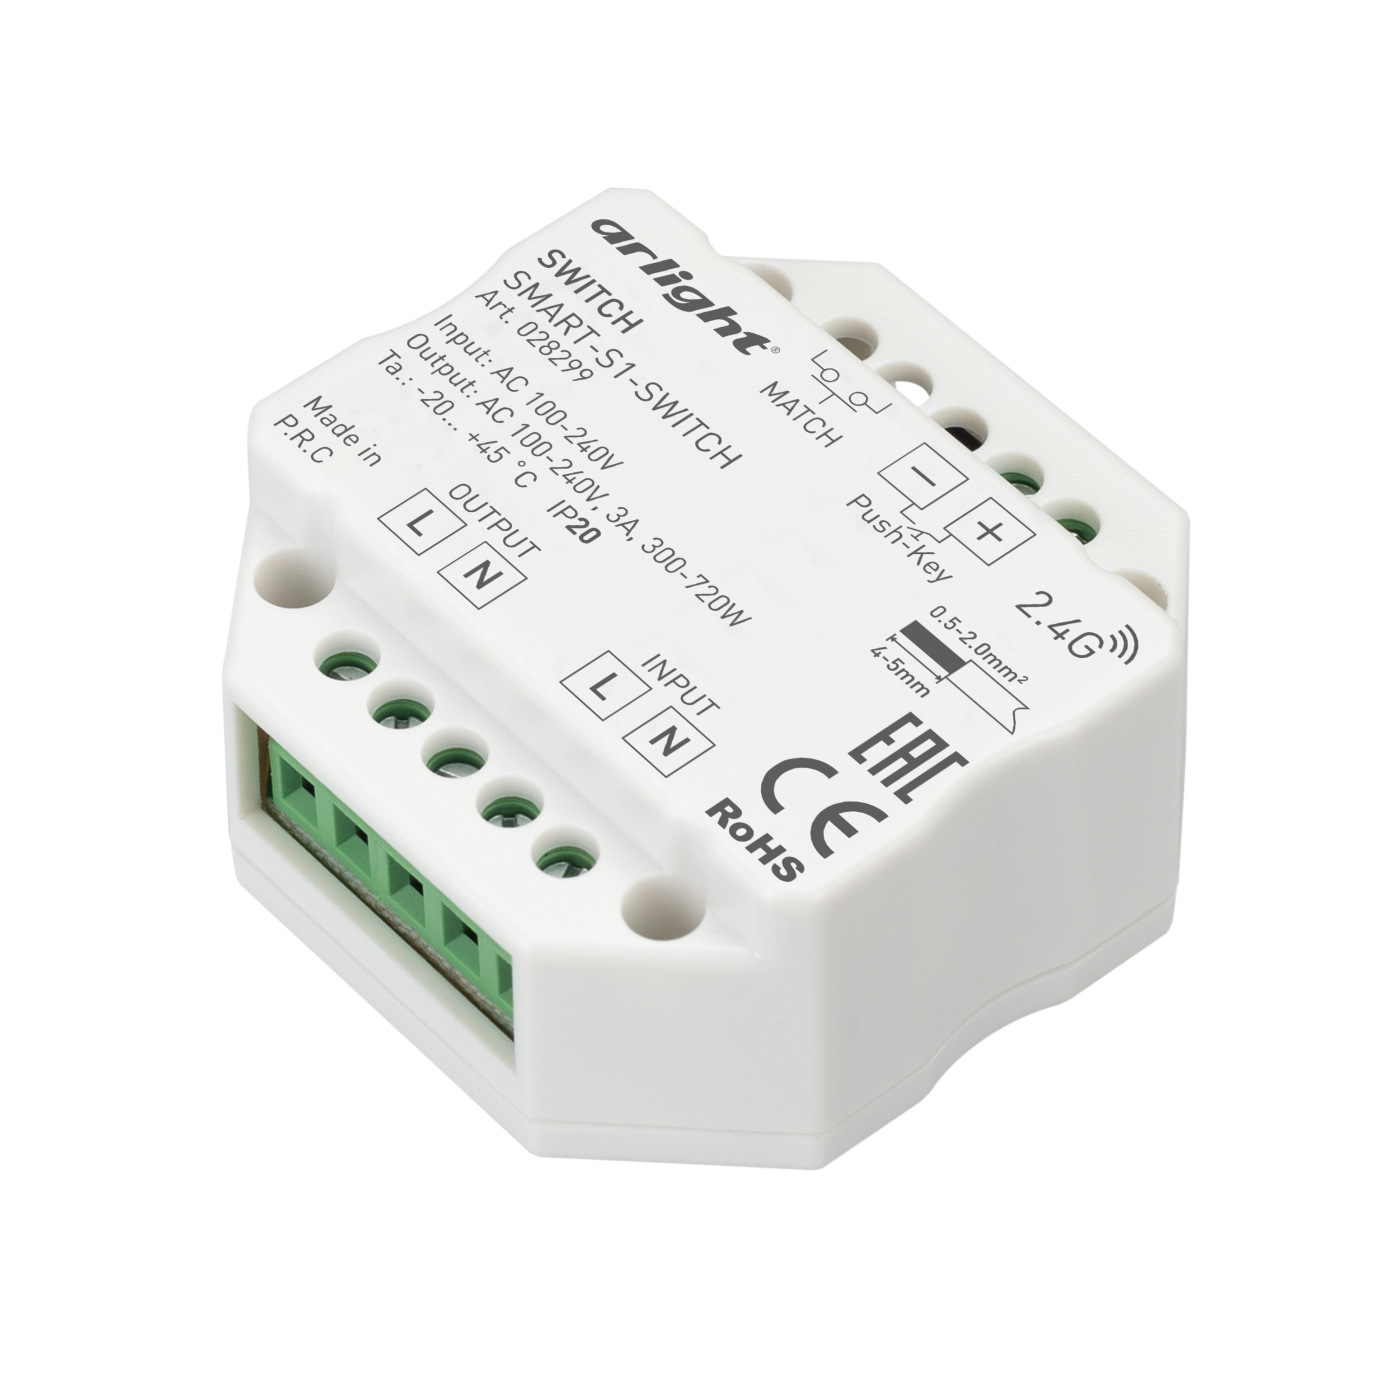 Контроллер-выключатель SMART-S1-SWITCH (230V, 3A, 2.4G) (Arlight, IP20 Пластик, 5 лет) выключатель apeyron в профиль инфракрасный ip20 встраиваемый